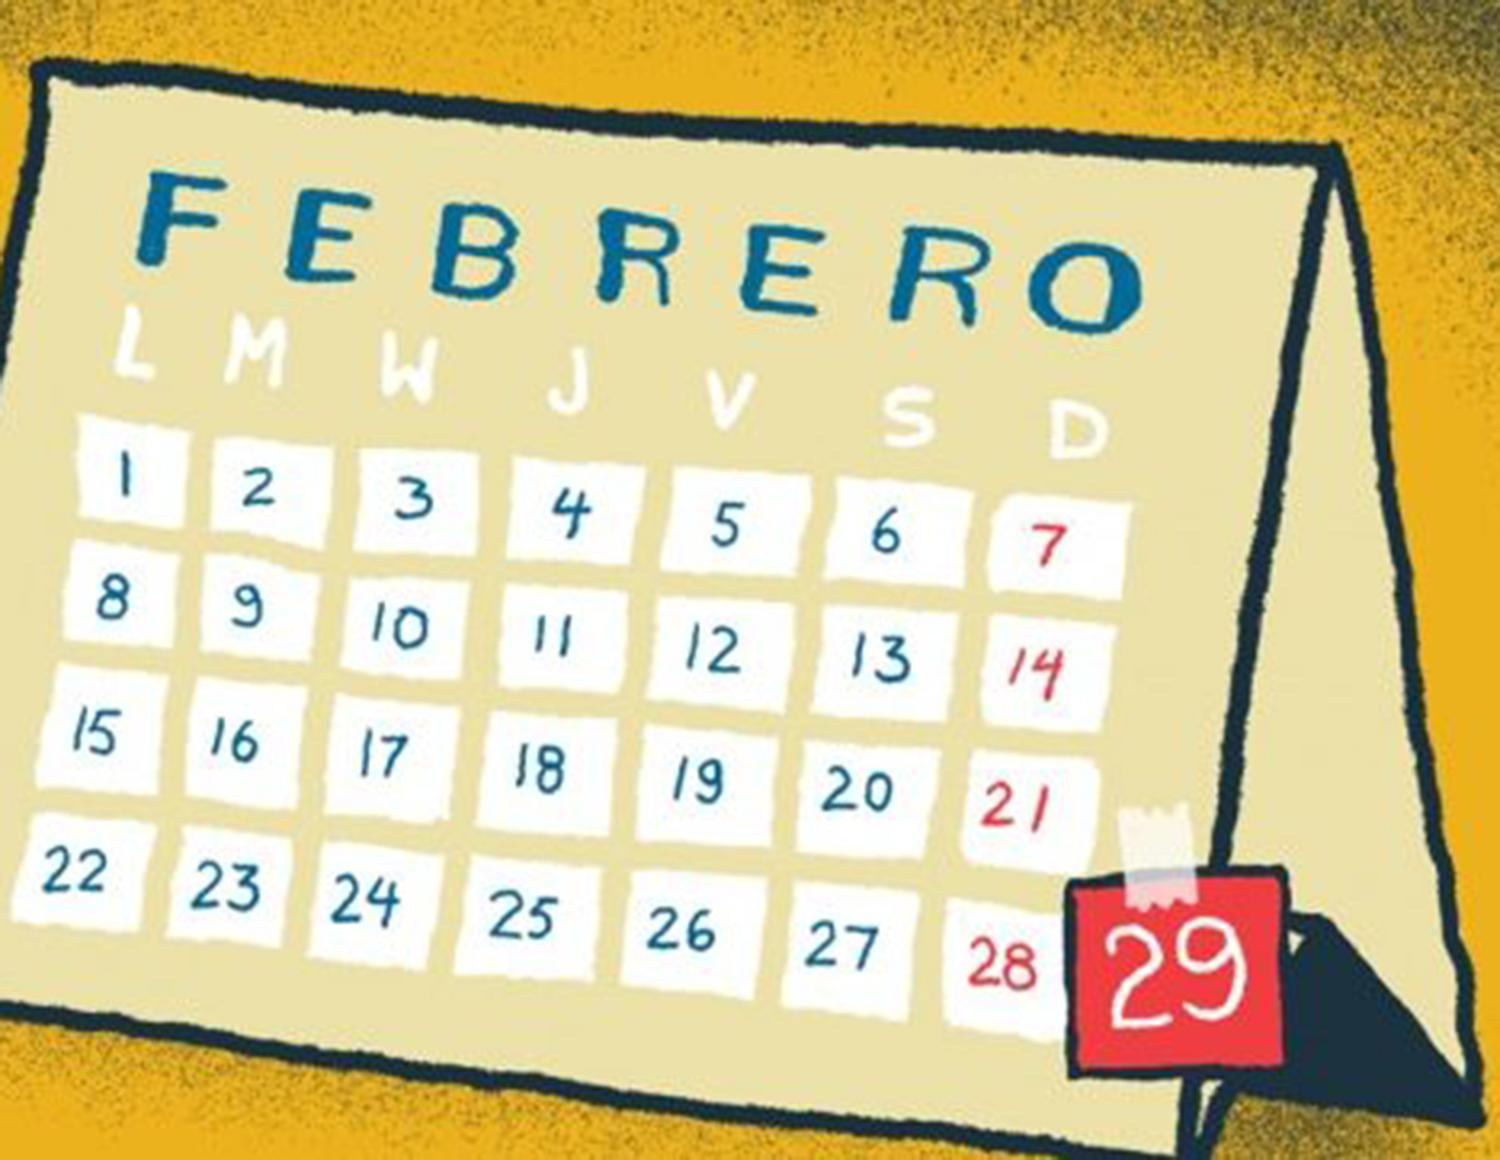 Si no lo habías notado, el calendario de 2020 viene con un día más en febrero.